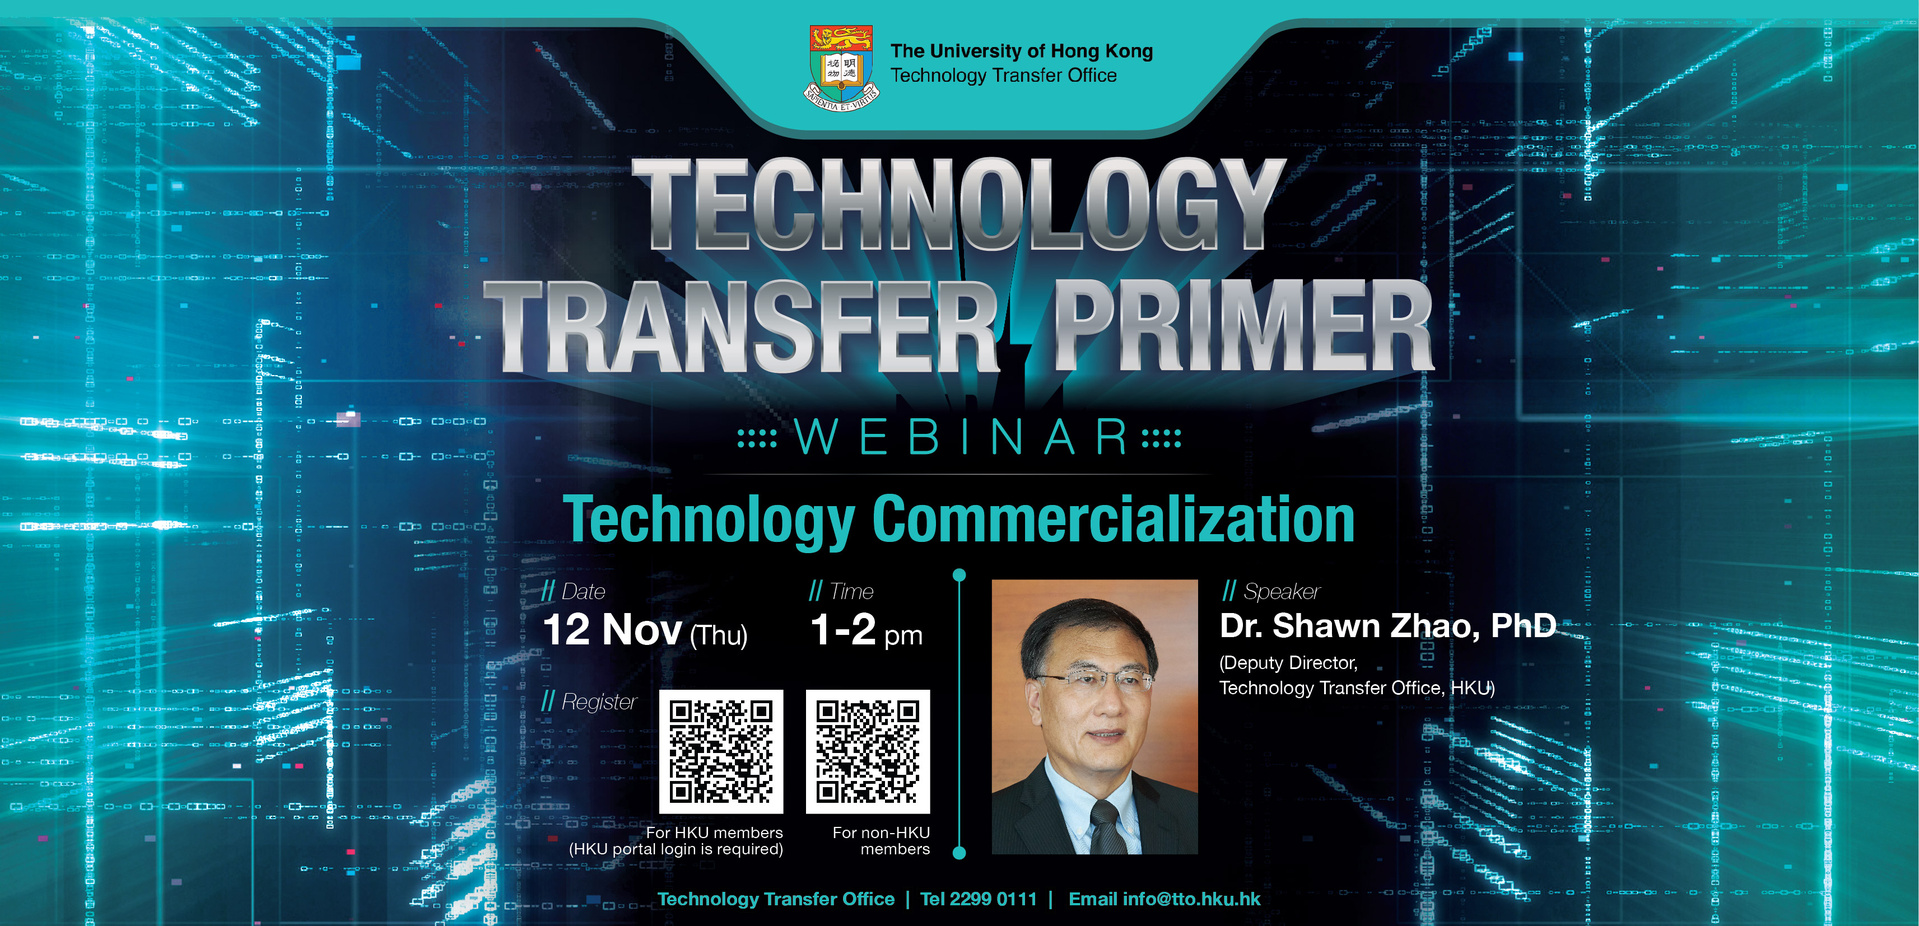 Technology Transfer Primer - Technology Commercialization